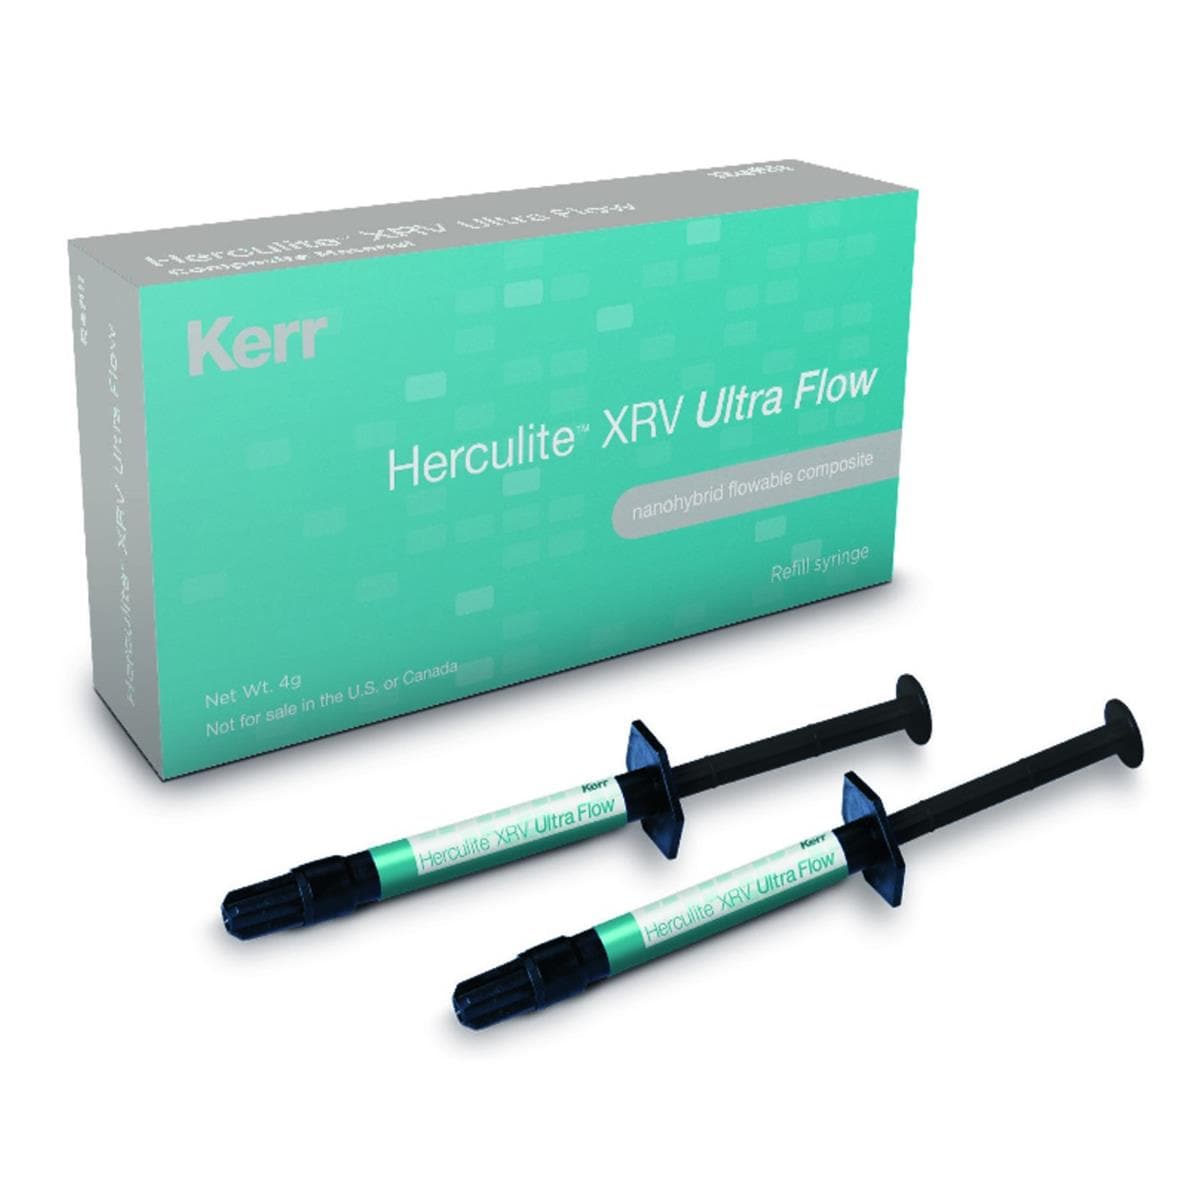 Herculite XRV Ultra Flow KERR - A1 - Seringue de 2g - Bote de 2